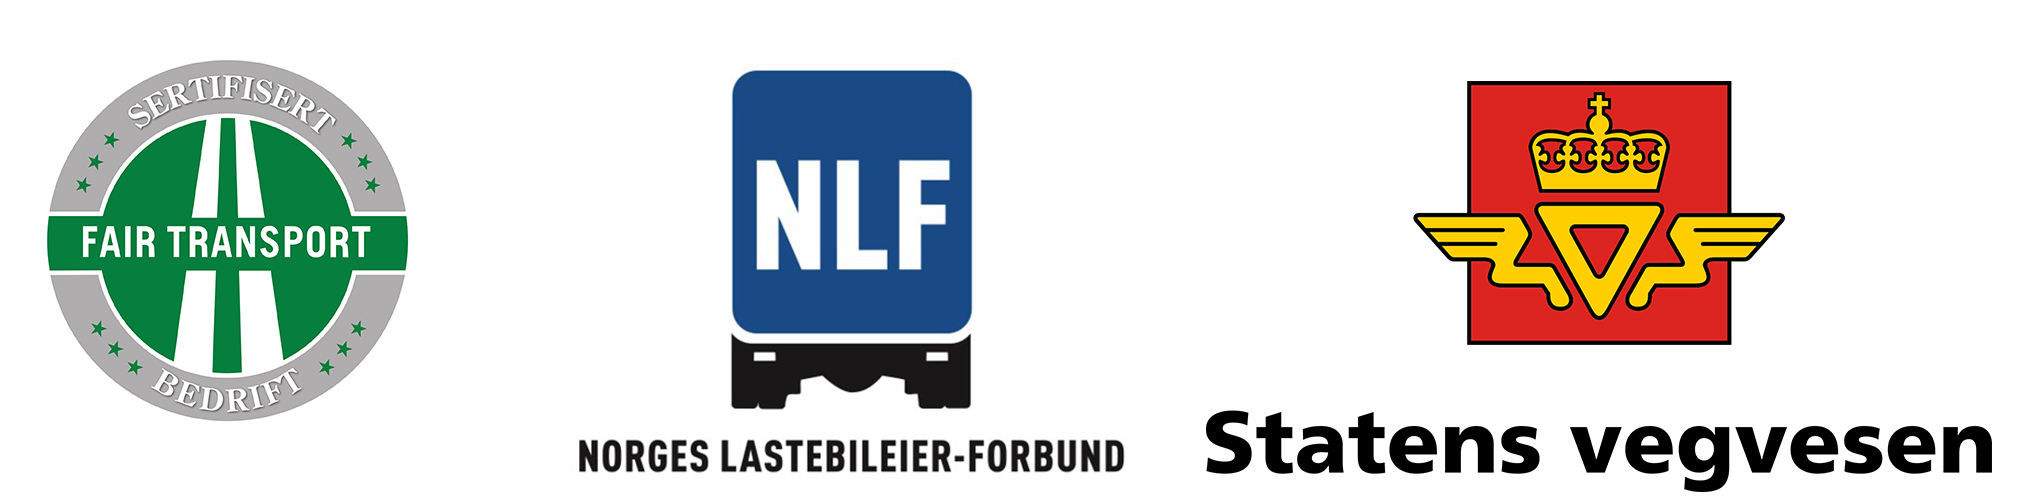 logoer for fair transport, nlf og statens vegvesen